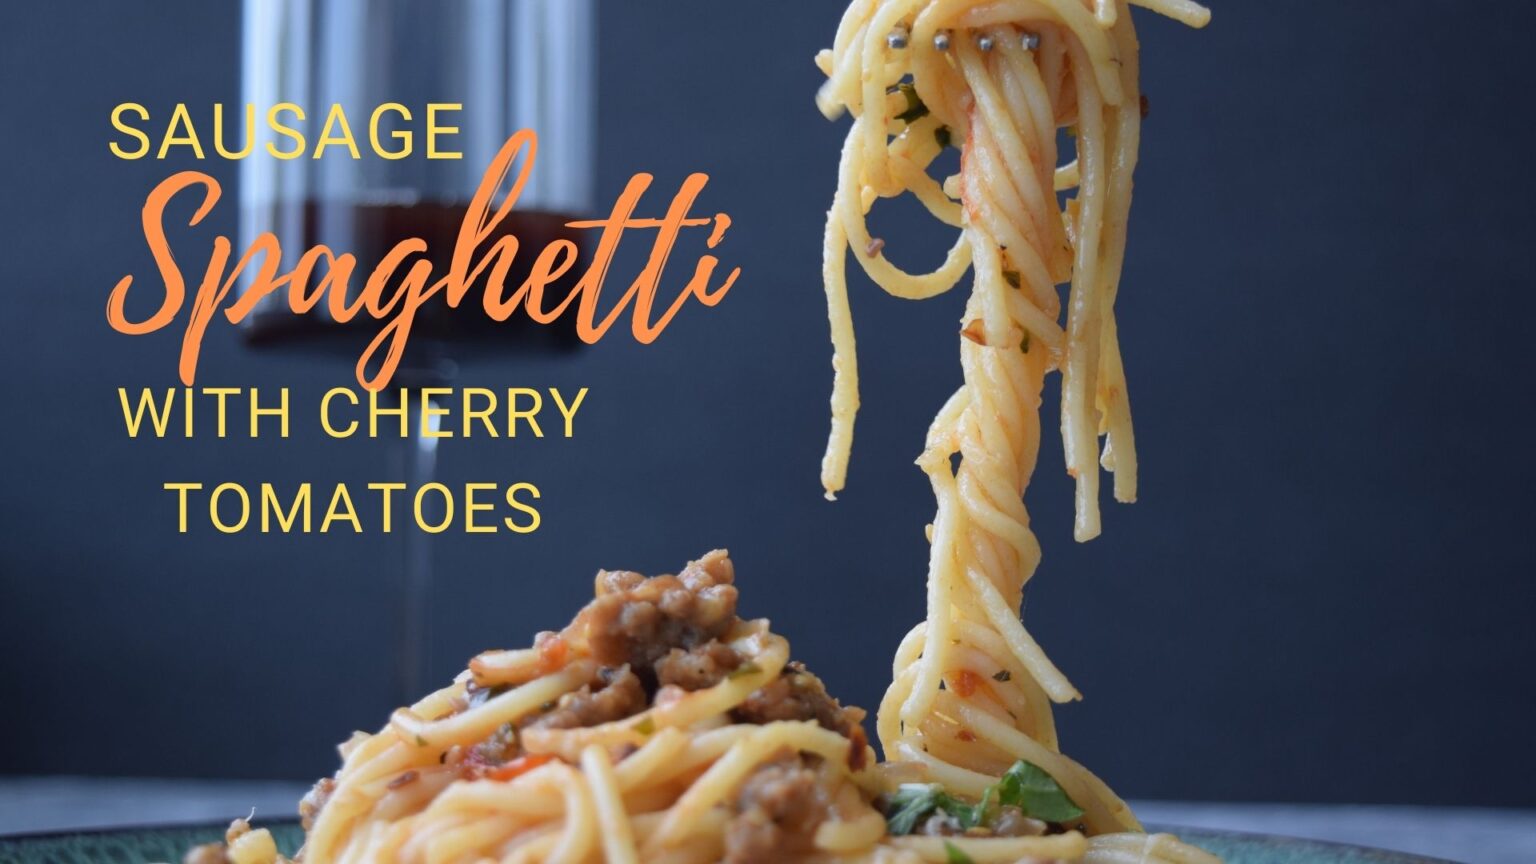 Sausage spaghetti